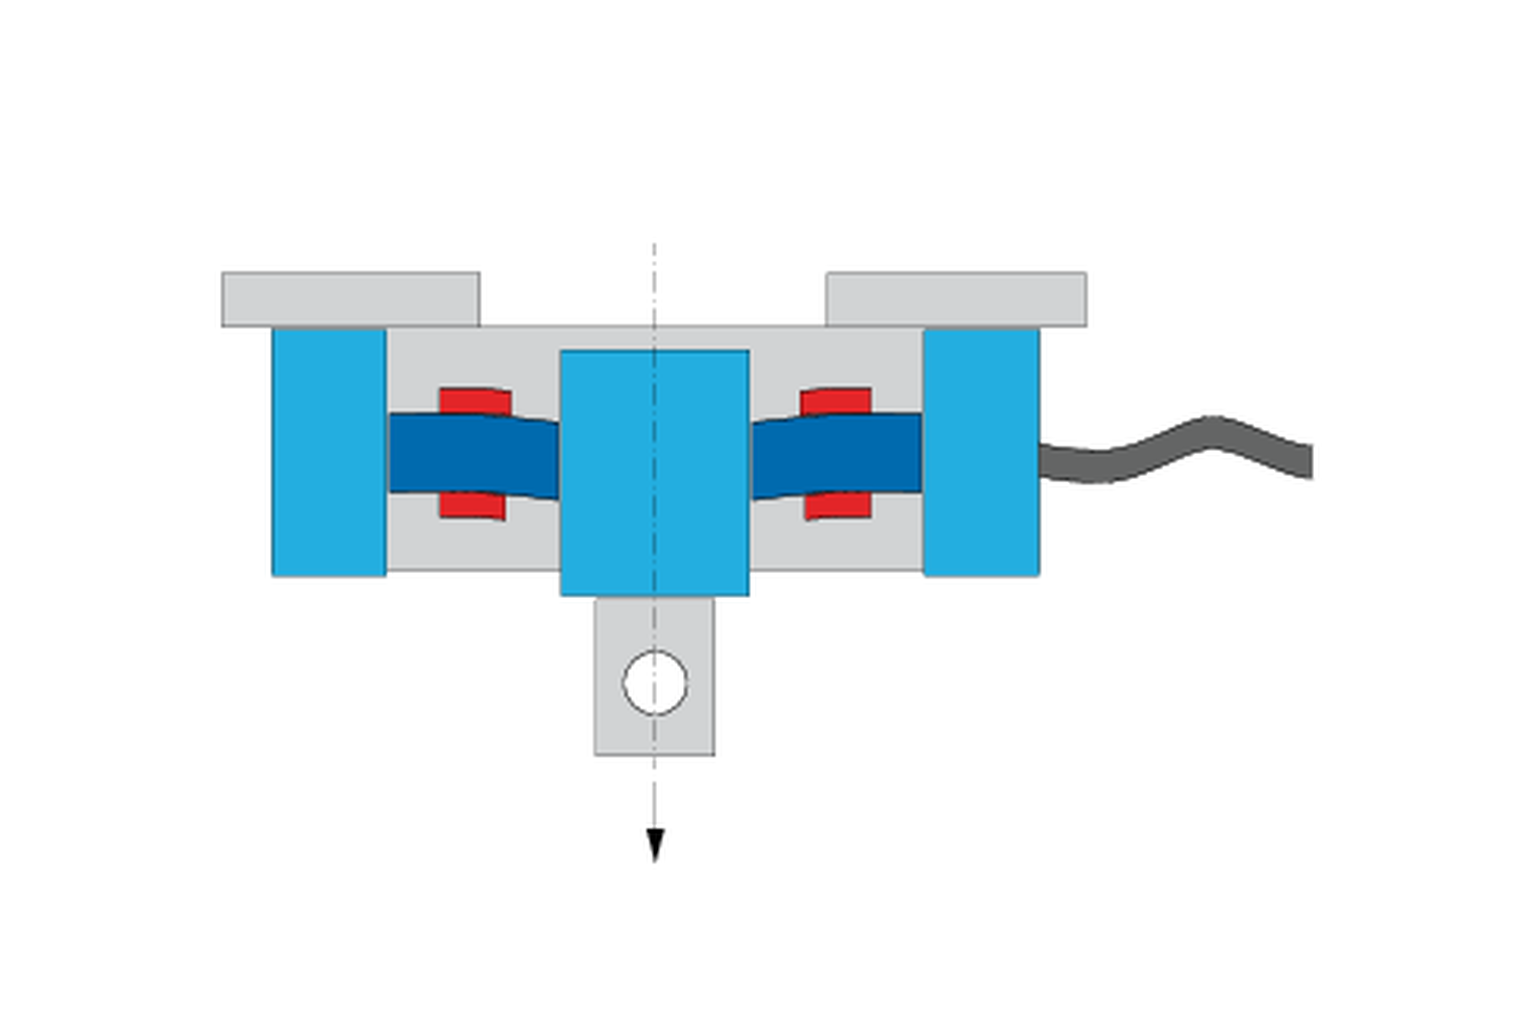 Kako deluje silomer? Prikaz silomera z merilnikom napetosti v iztegnjenem in stisnjenem stanju